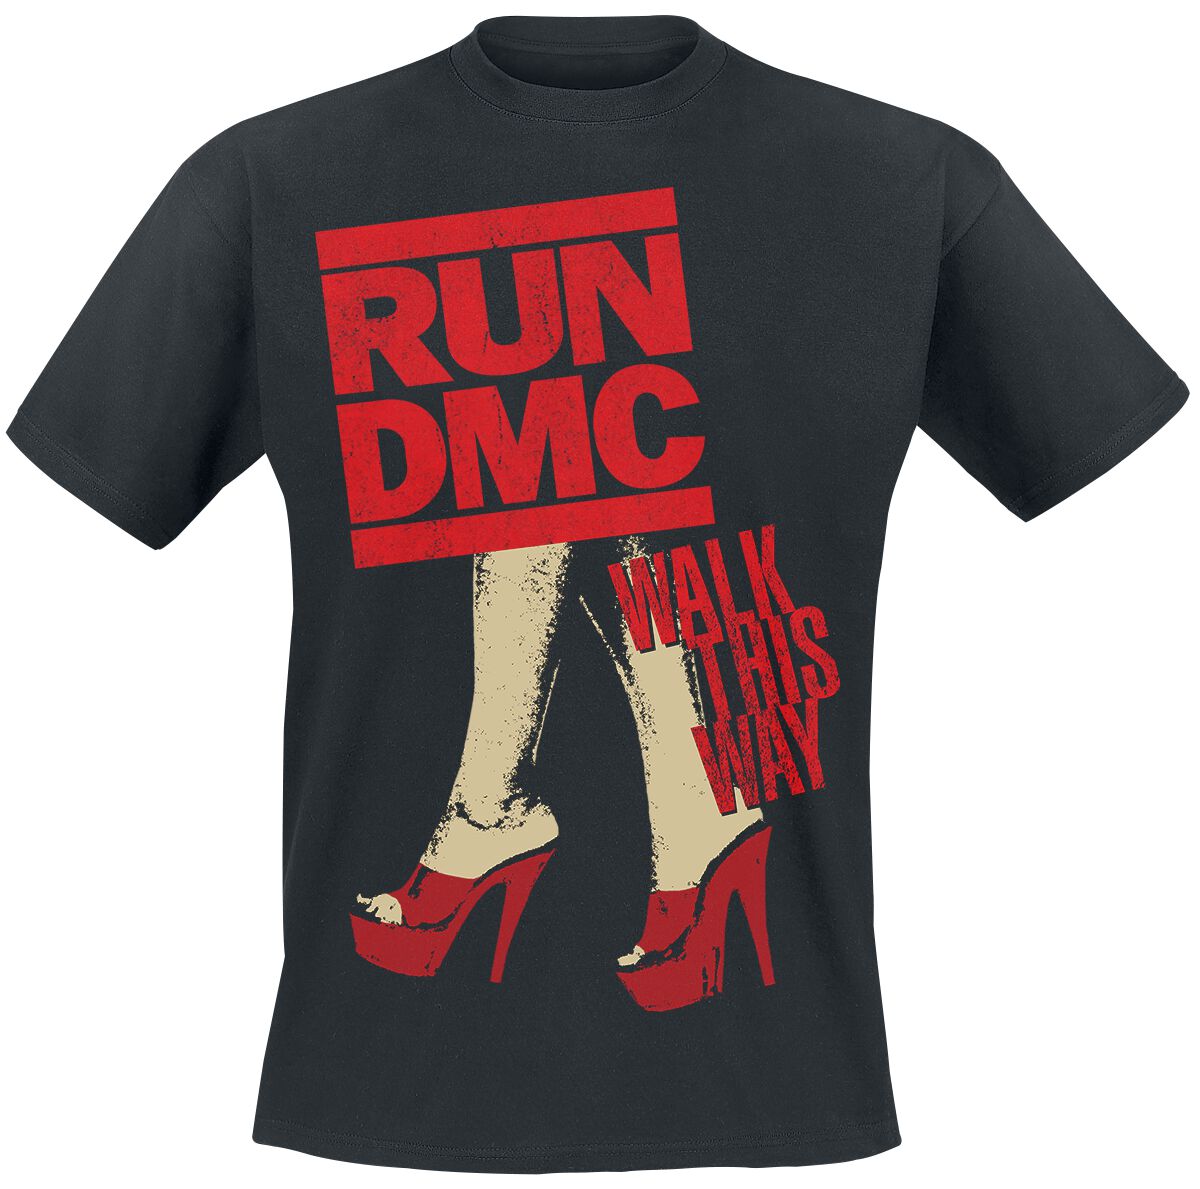 Run DMC T-Shirt - Walk This Way Legs - S bis L - für Männer - Größe S - schwarz  - Lizenziertes Merchandise!